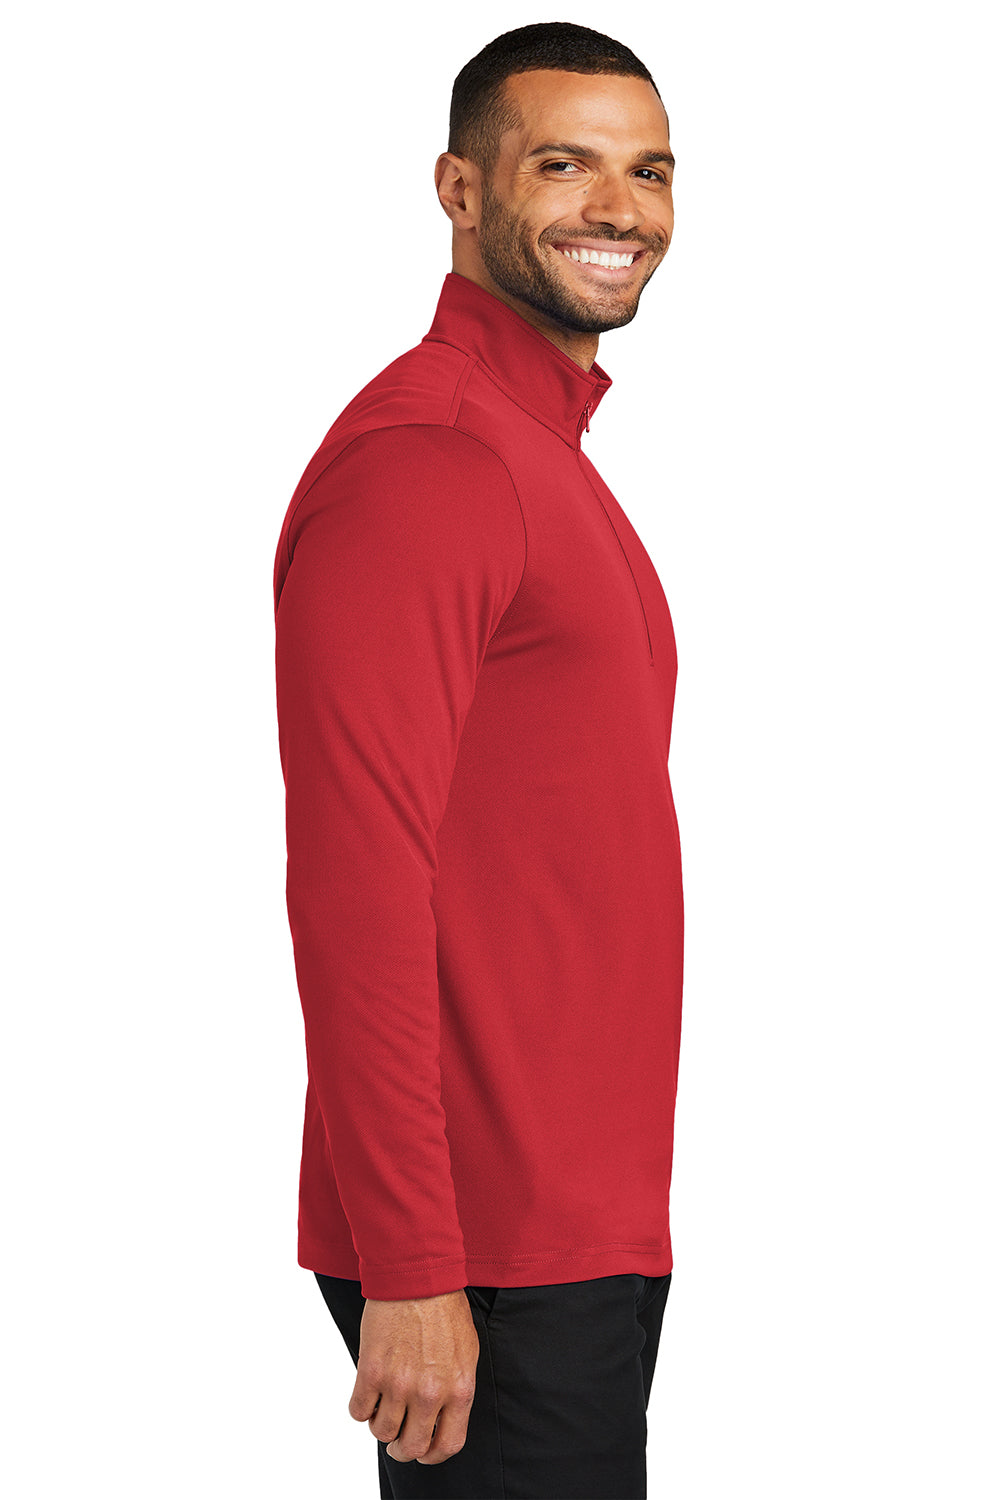 Port Authority K112 Mens Dry Zone UV Micro Mesh 1/4 Zip Sweatshirt Rich Red Side